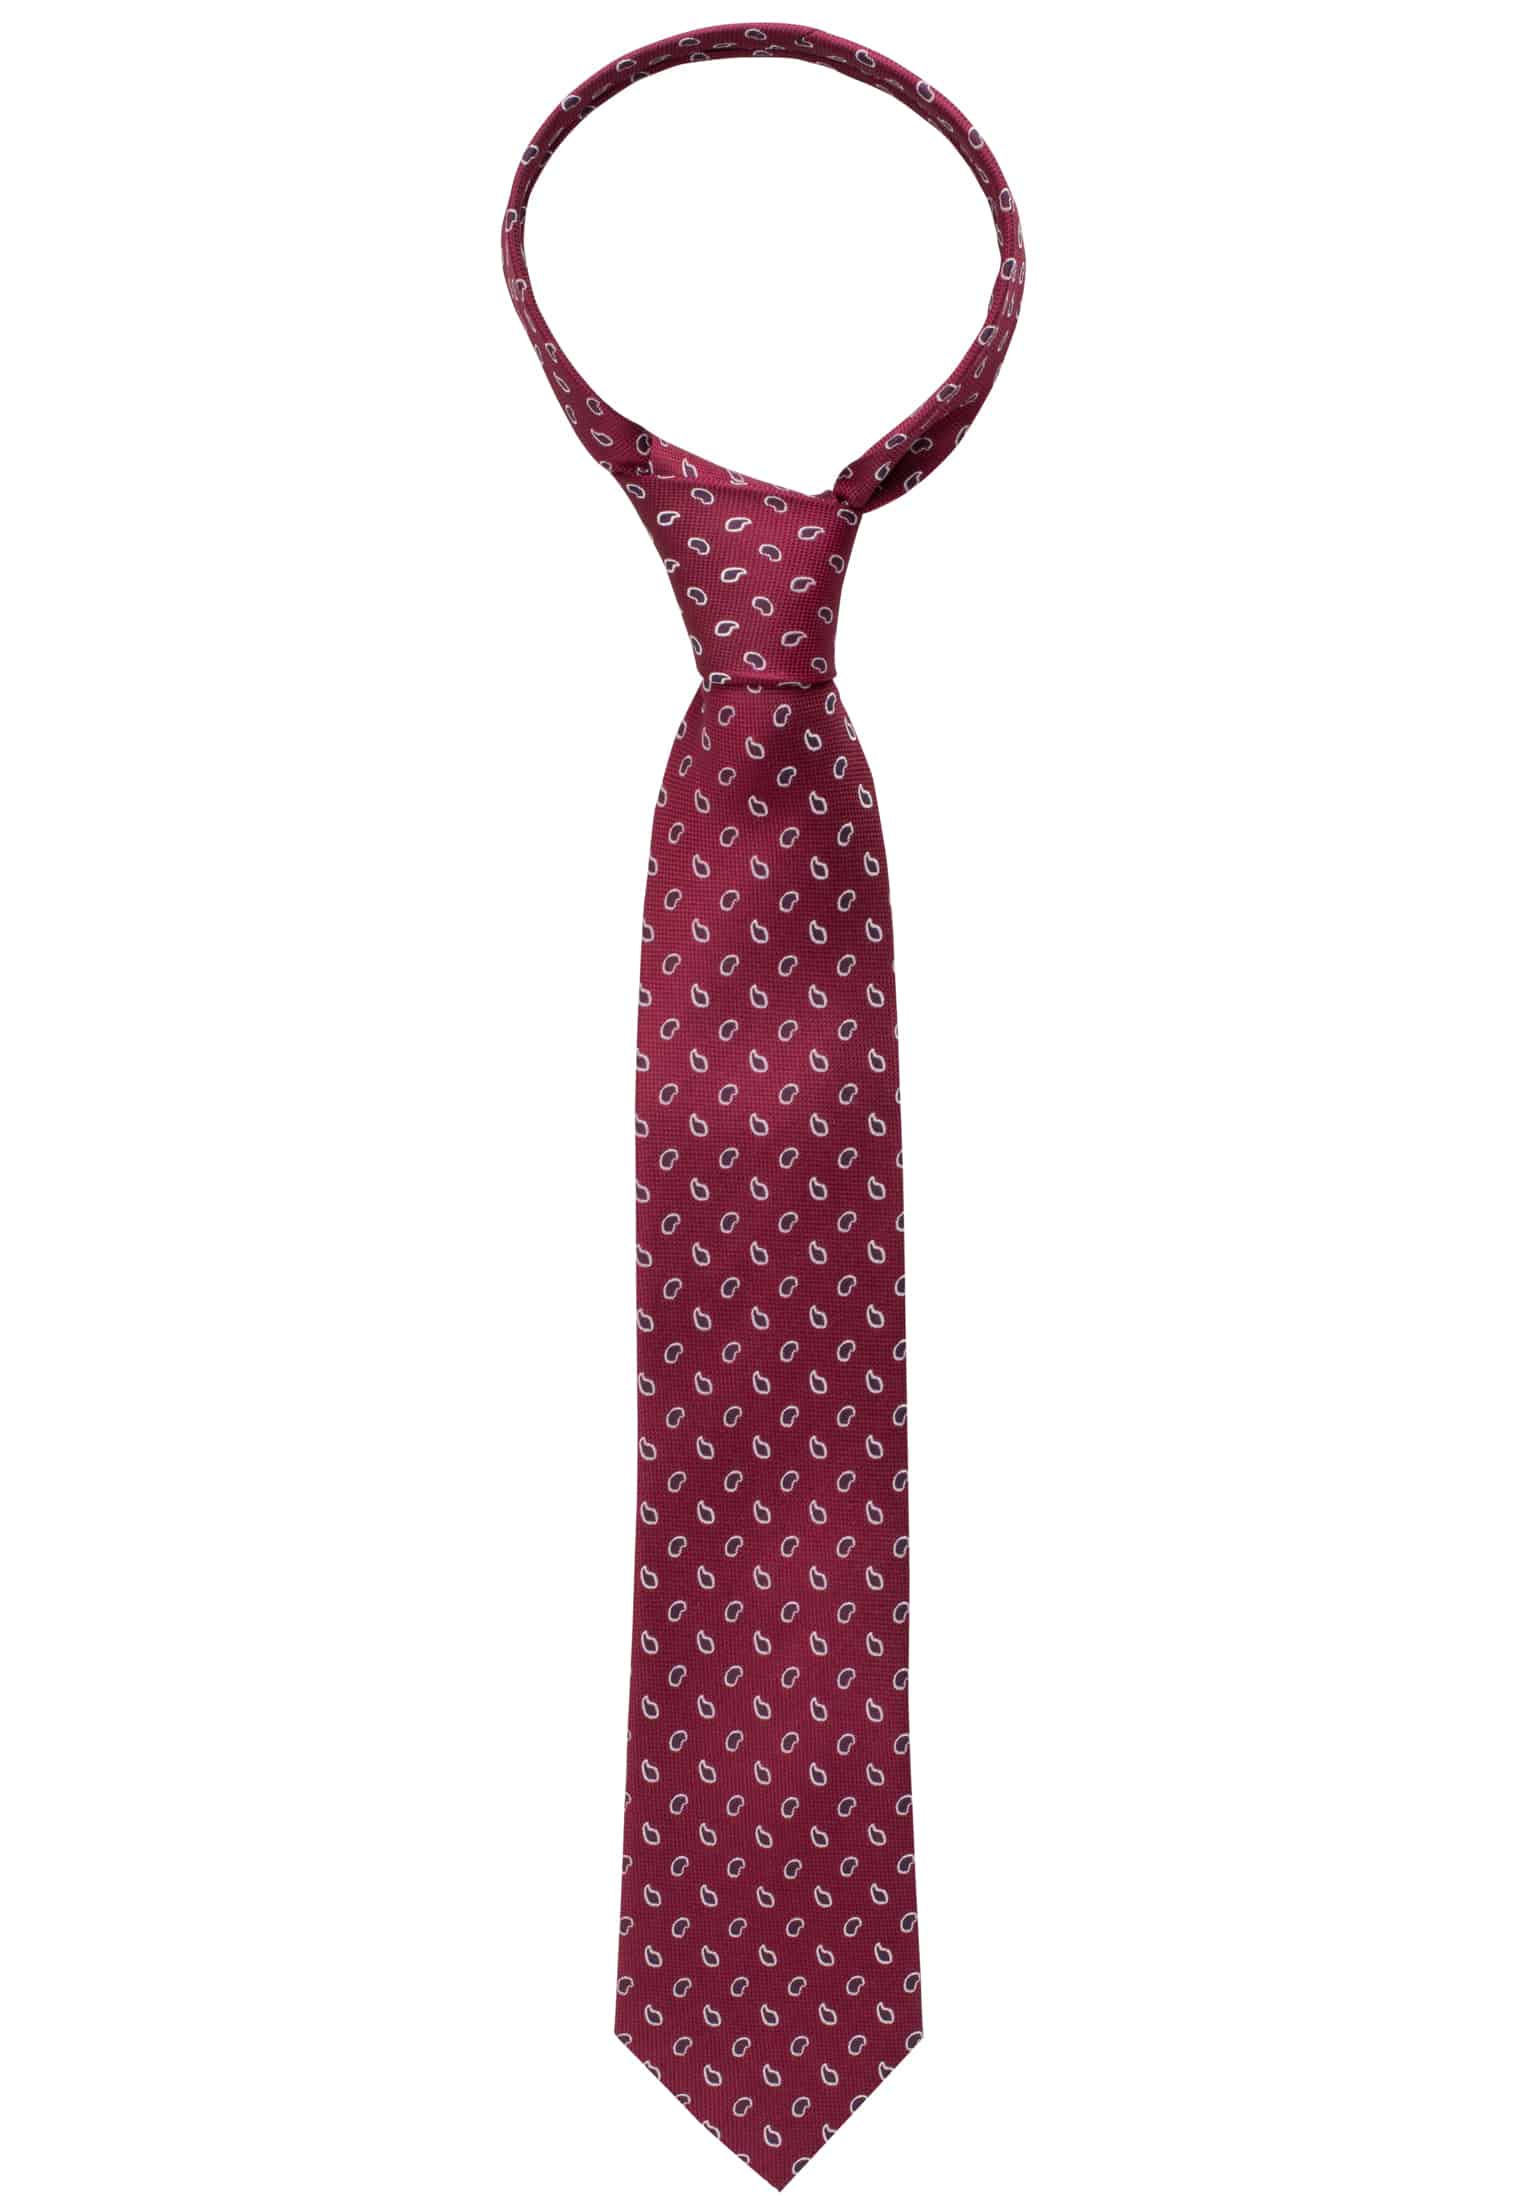 Krawatte in bordeaux 1AC00541-05-84-142 | | gemustert bordeaux | 142